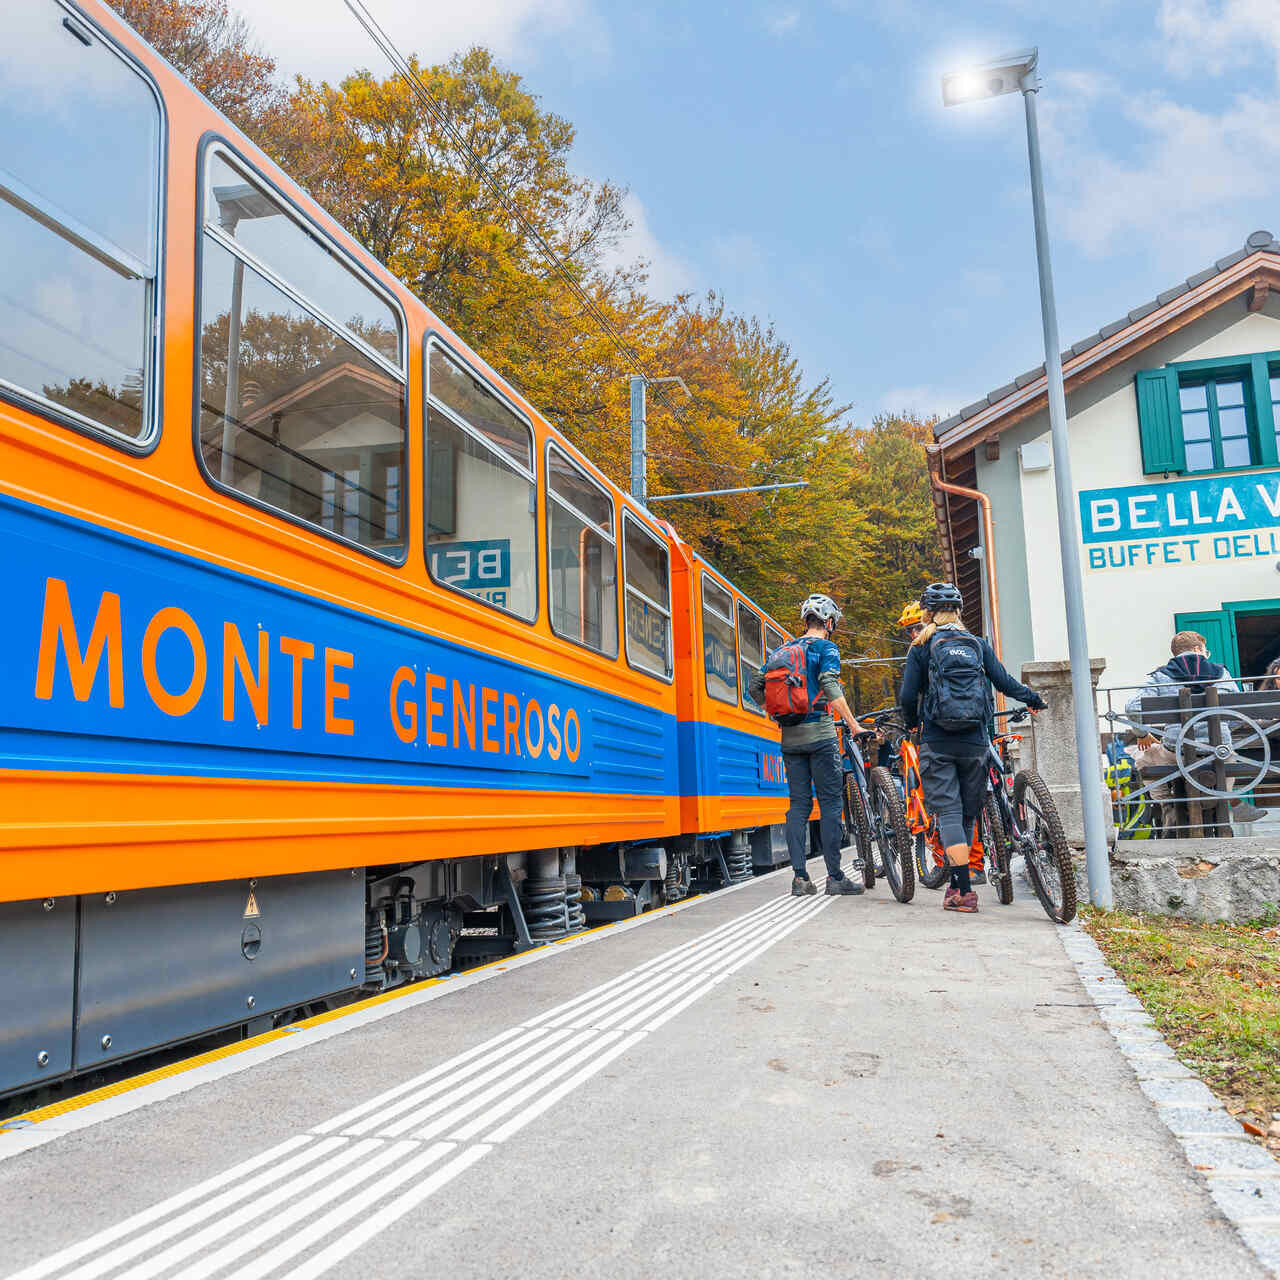 Monte Generoso: gerbong klasik berwarna biru dan oranye